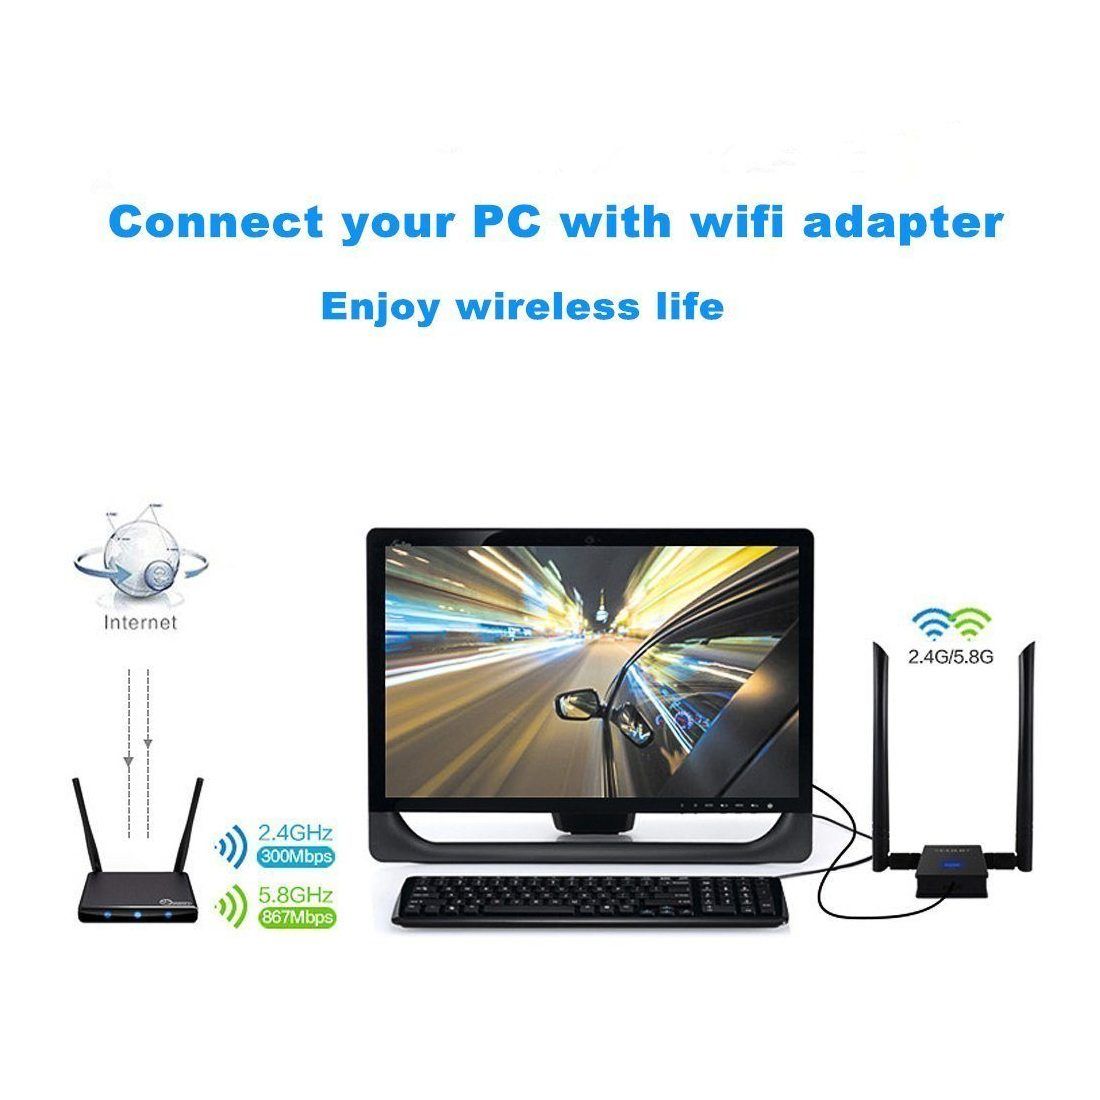 Zoweetek Adaptateur clé wifi AC1200 USB3.0 Double Bande 5.8G/2.4G pour Windows XP/ Vista/ 7/ 8/ 10, Linux, Mac OS